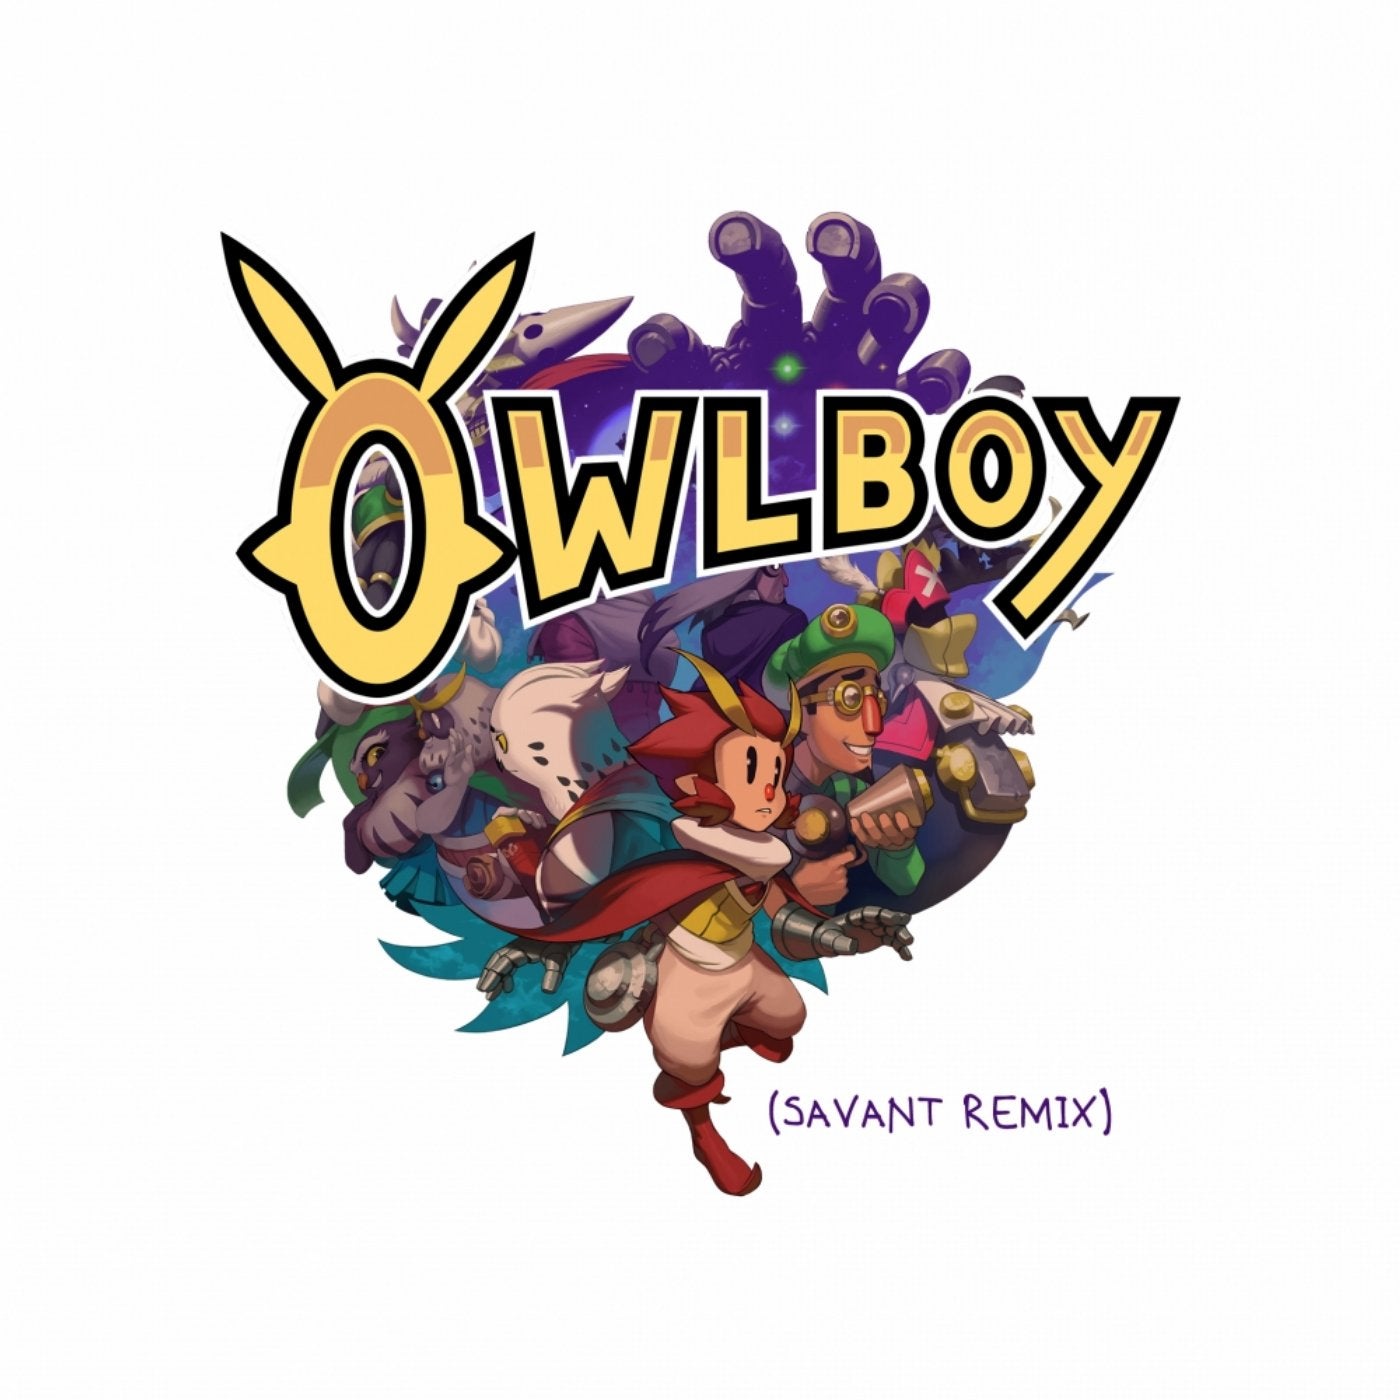 Owlboy Theme (Savant Remix)